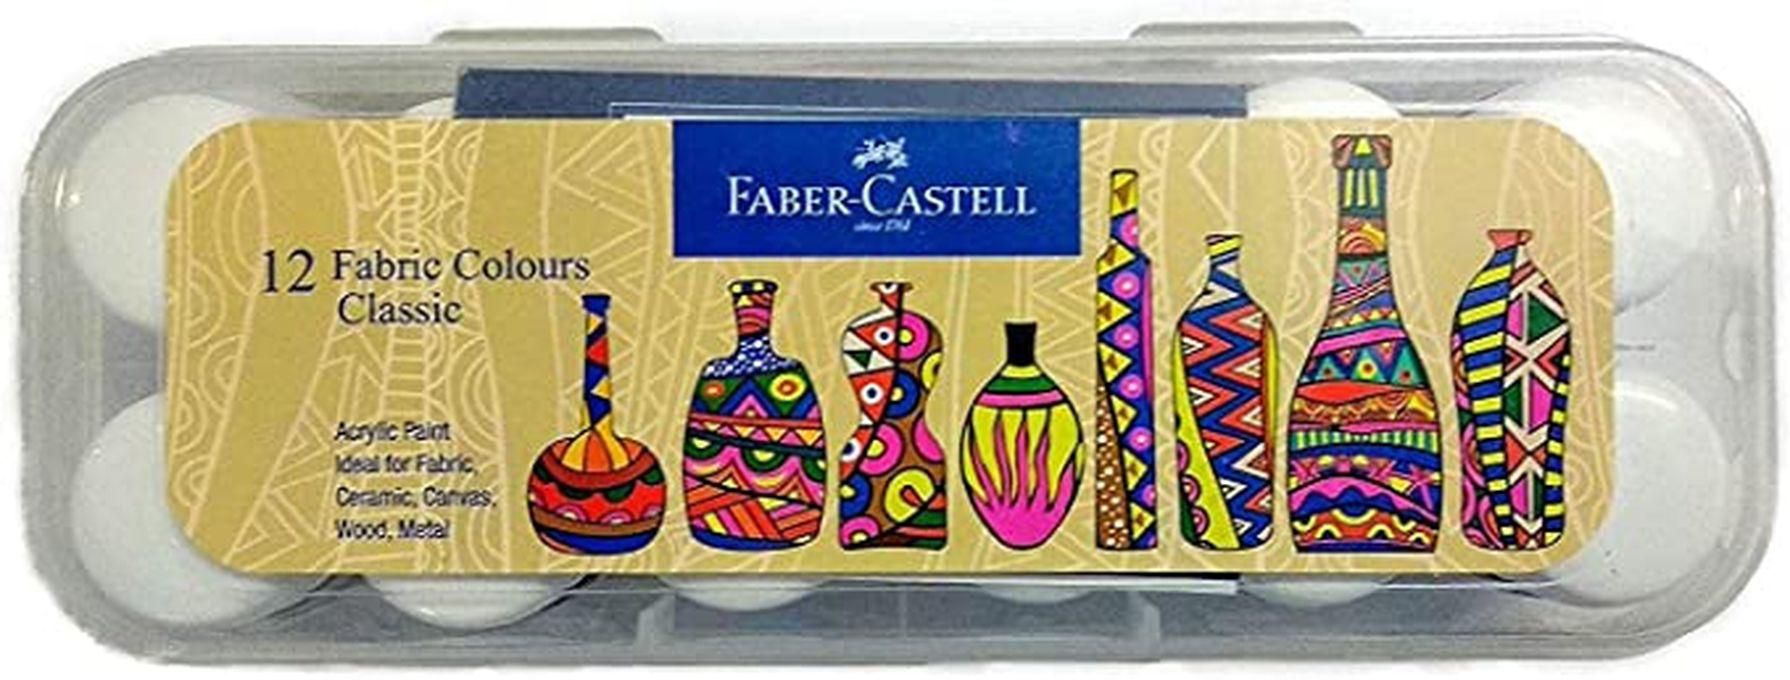 Faber Castell طلاء اكريليك للقماش 12 لون من فابر كاستل، 10 مل